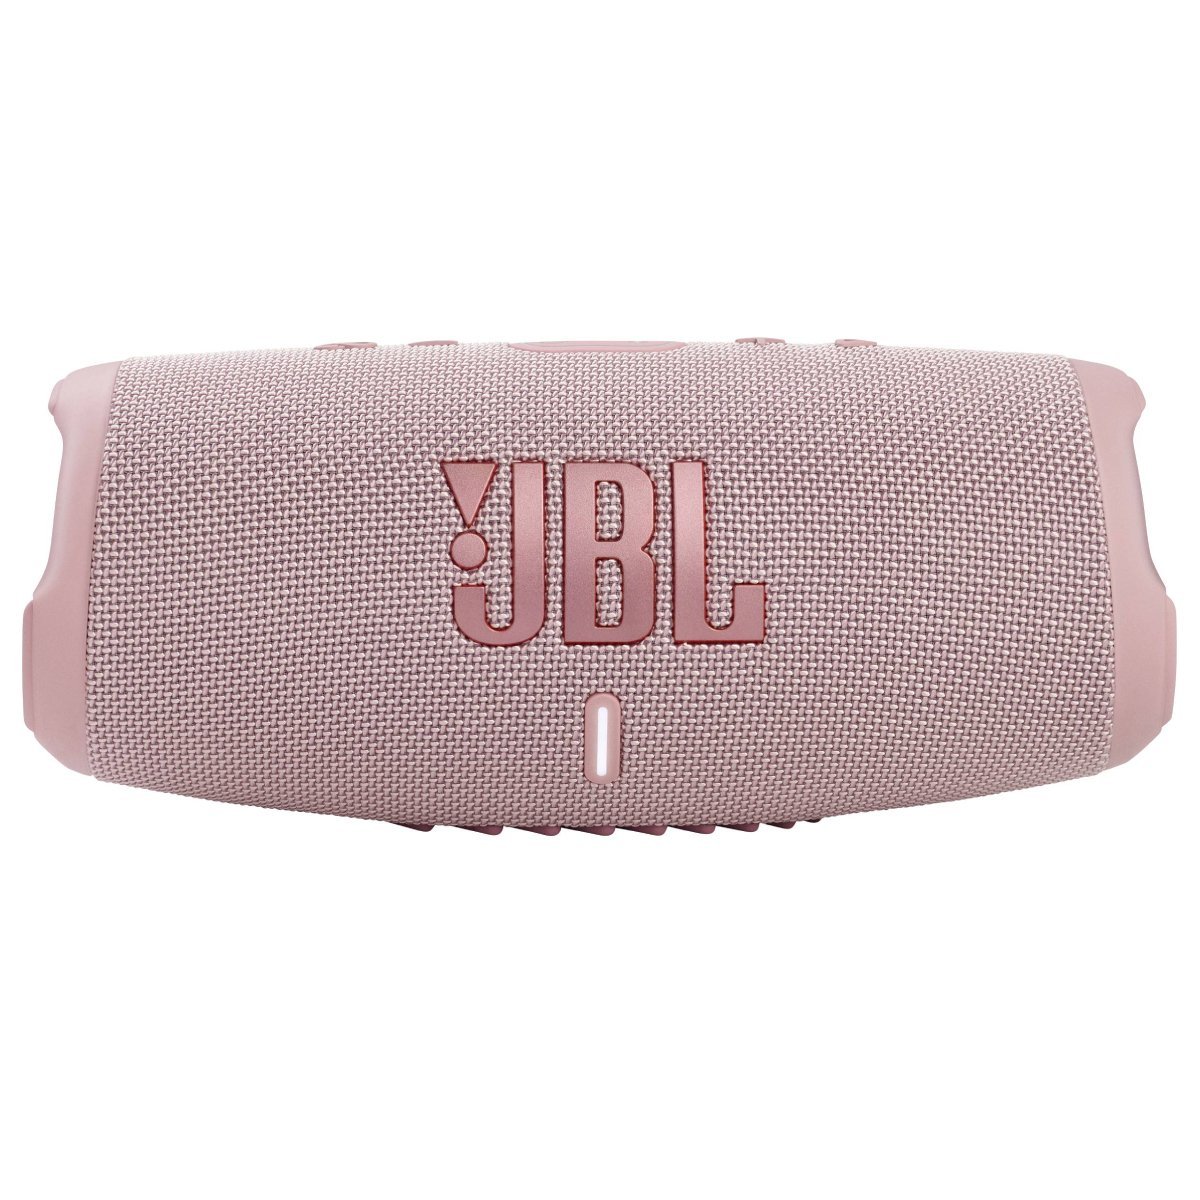 JBL Charge 5 Bluetooth Waterproof Portable Speaker - Pink - Store 974 | ستور ٩٧٤